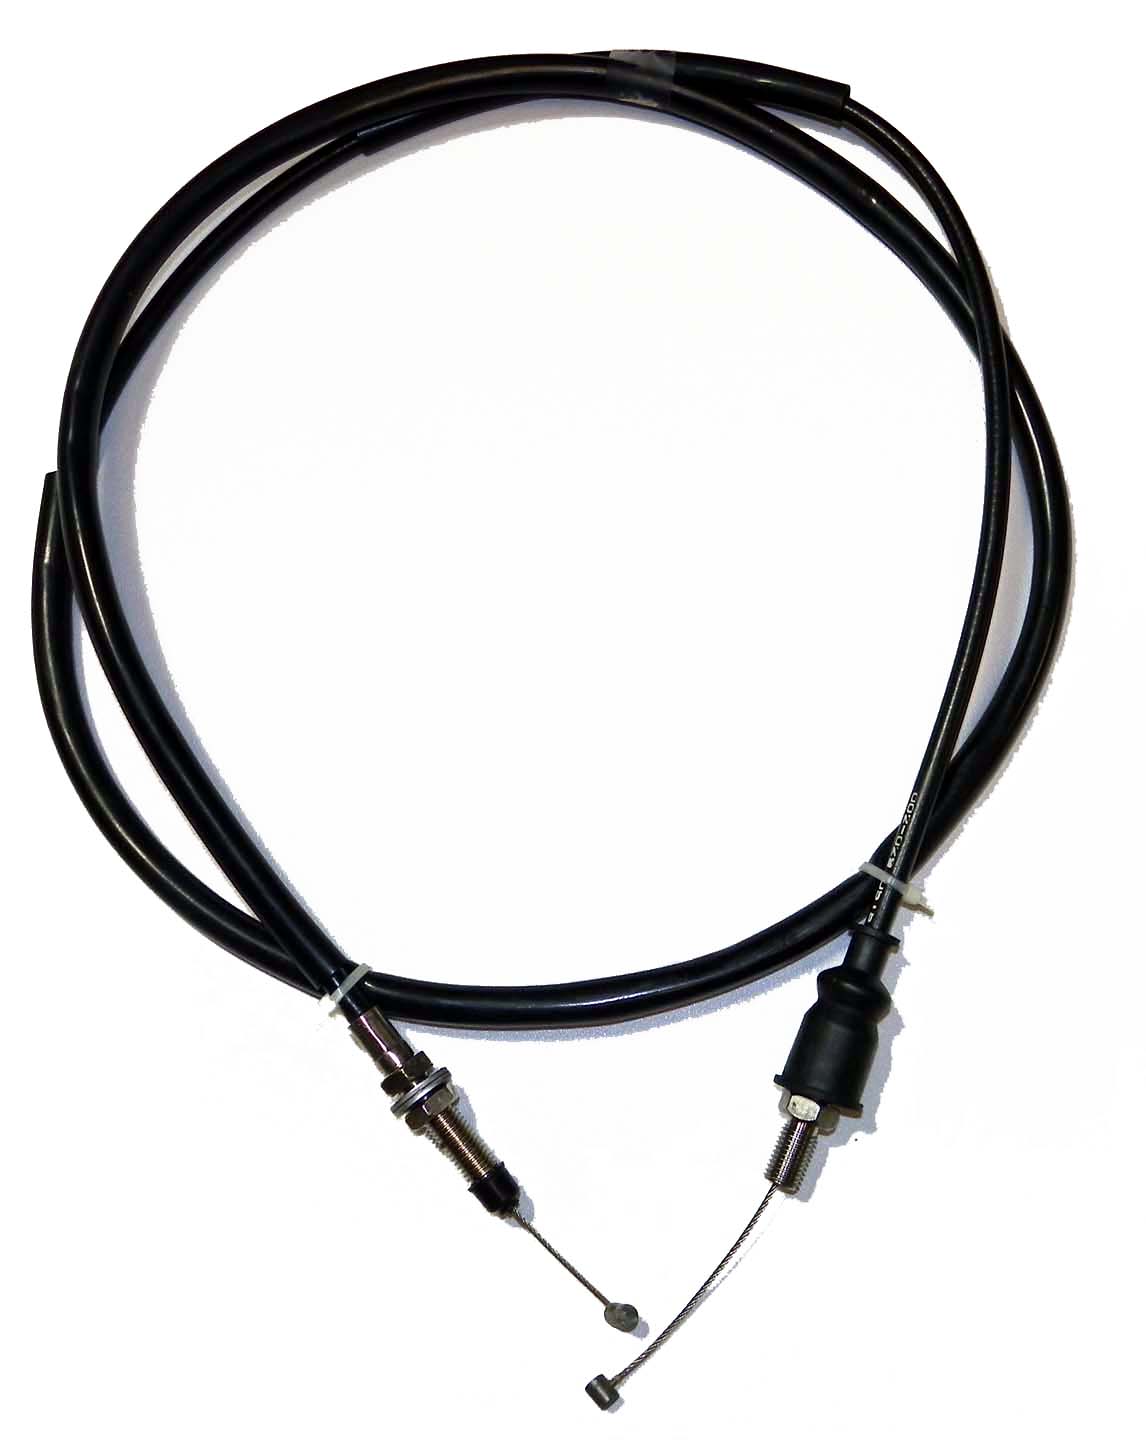 Throttle Cable - Kawasaki PWC (540123738) - Click Image to Close